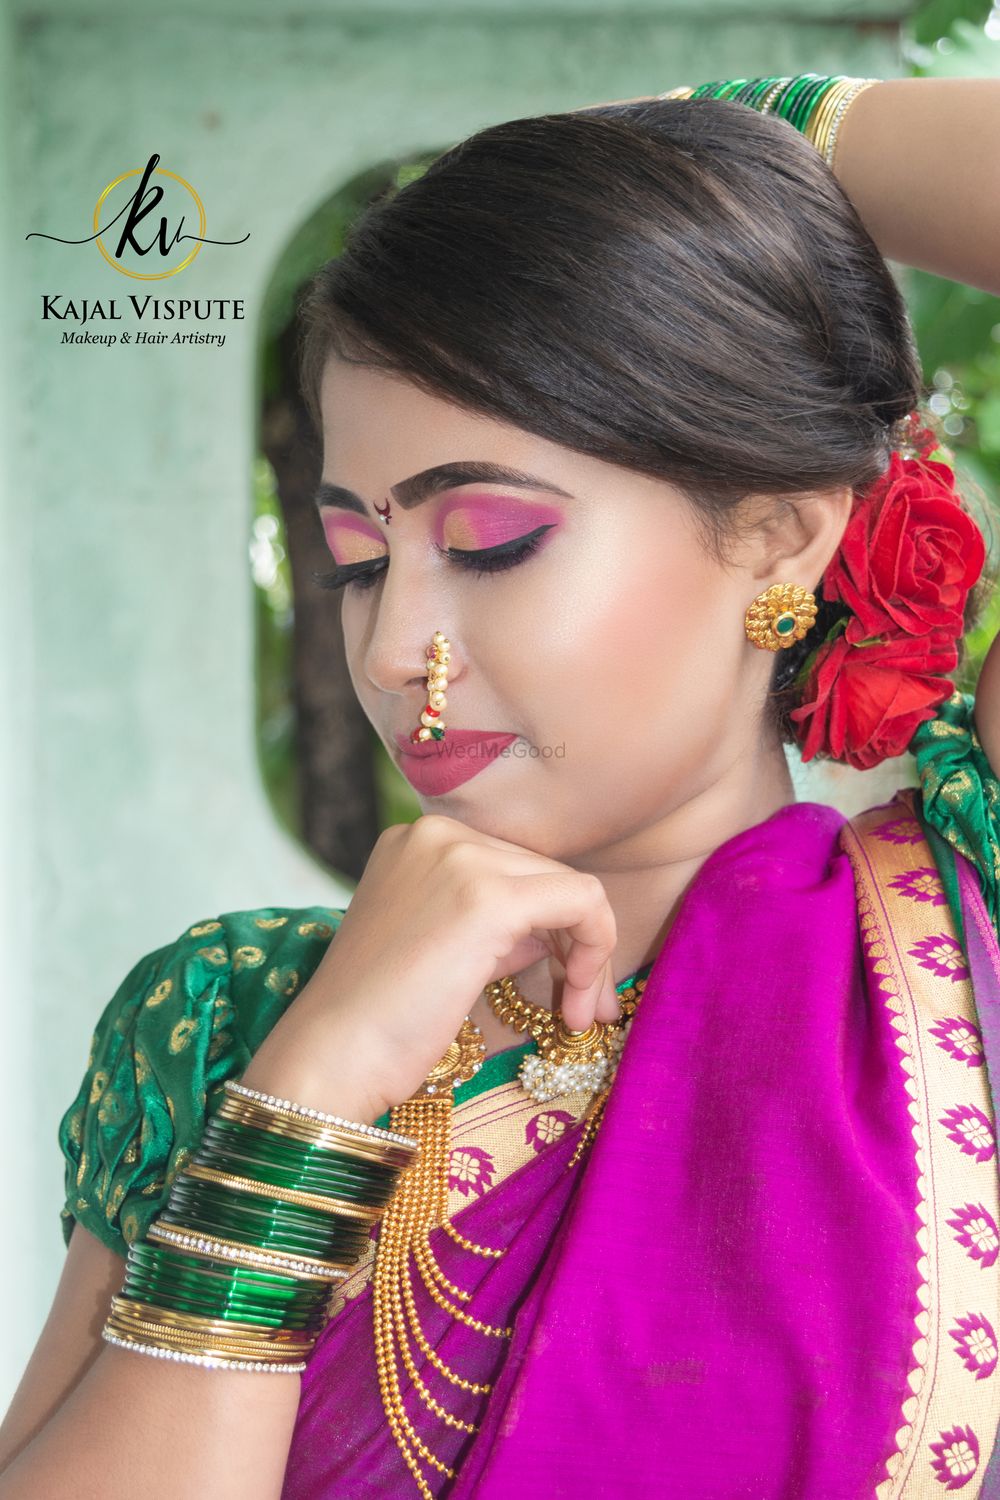 Photo From Nauvari Look - By Kajal Vispute Makeup & Hair Artistry